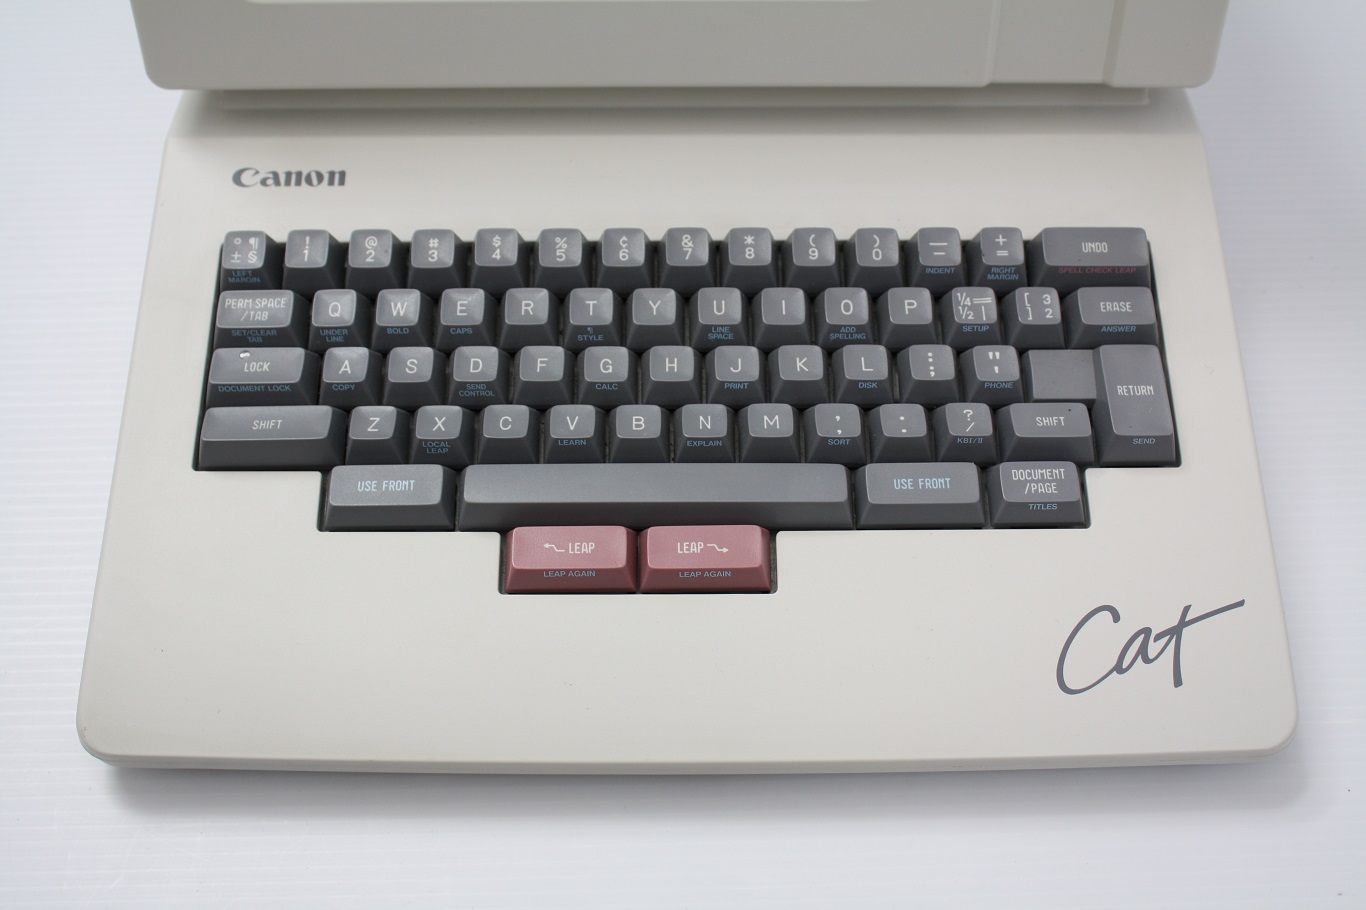 Canon Cat keyboard